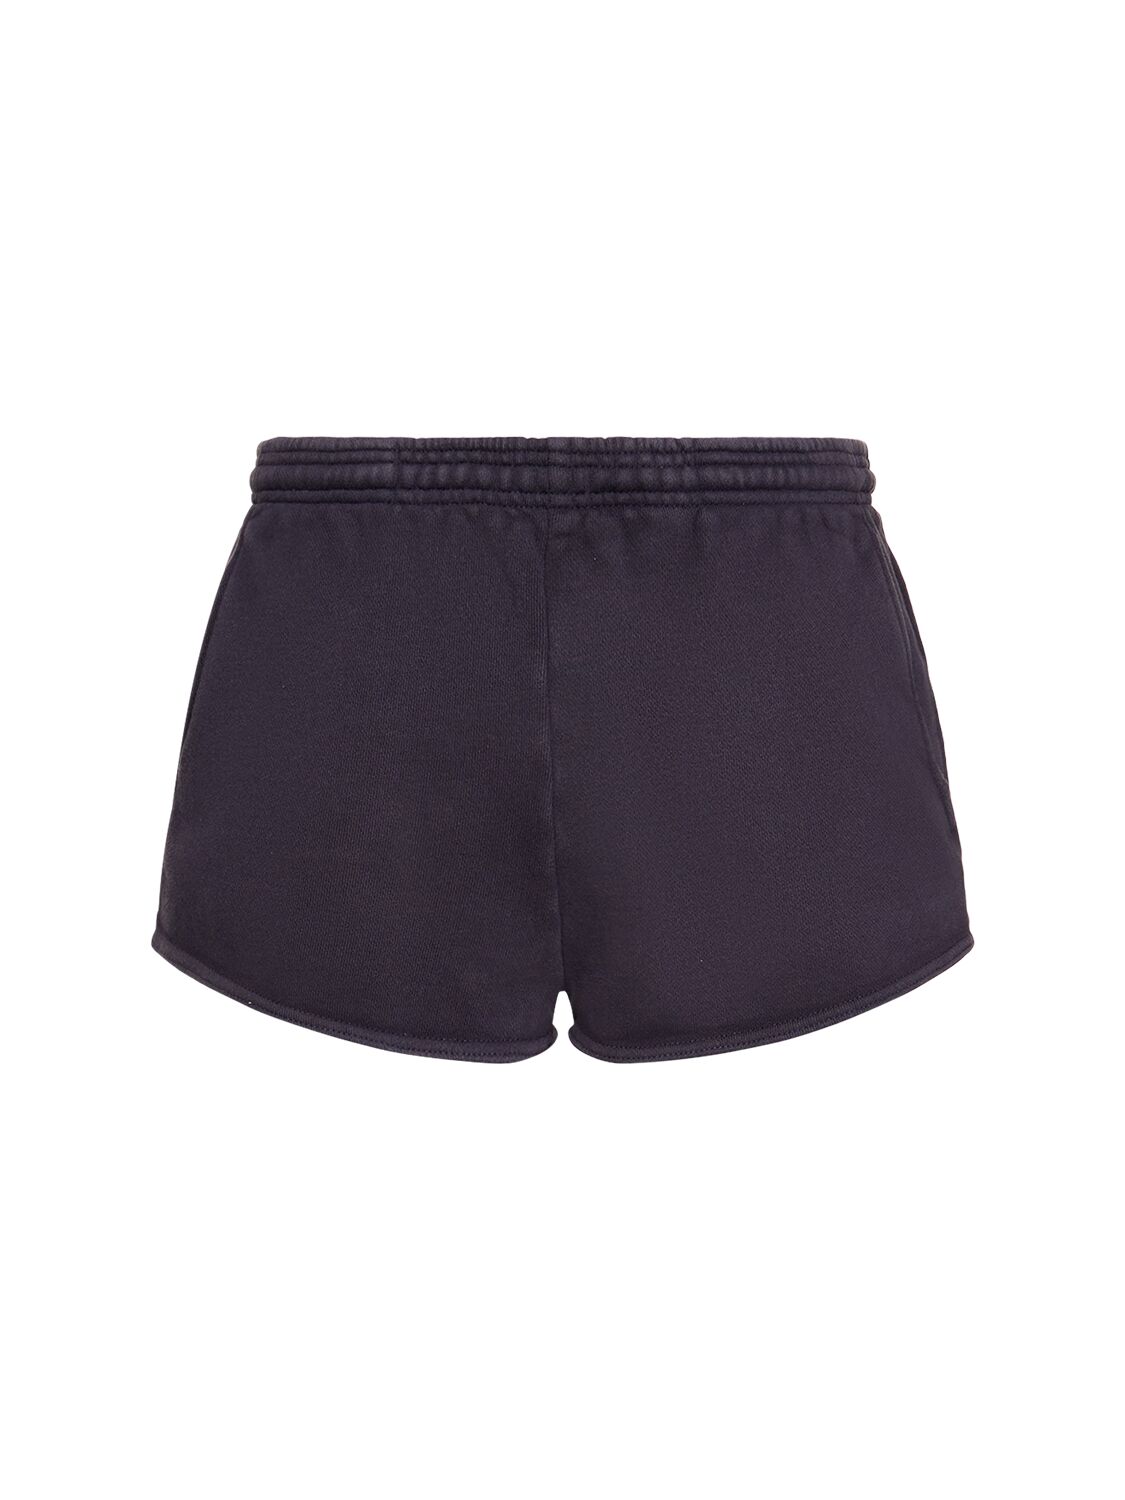 Tar Micro Shorts – MEN > CLOTHING > SHORTS